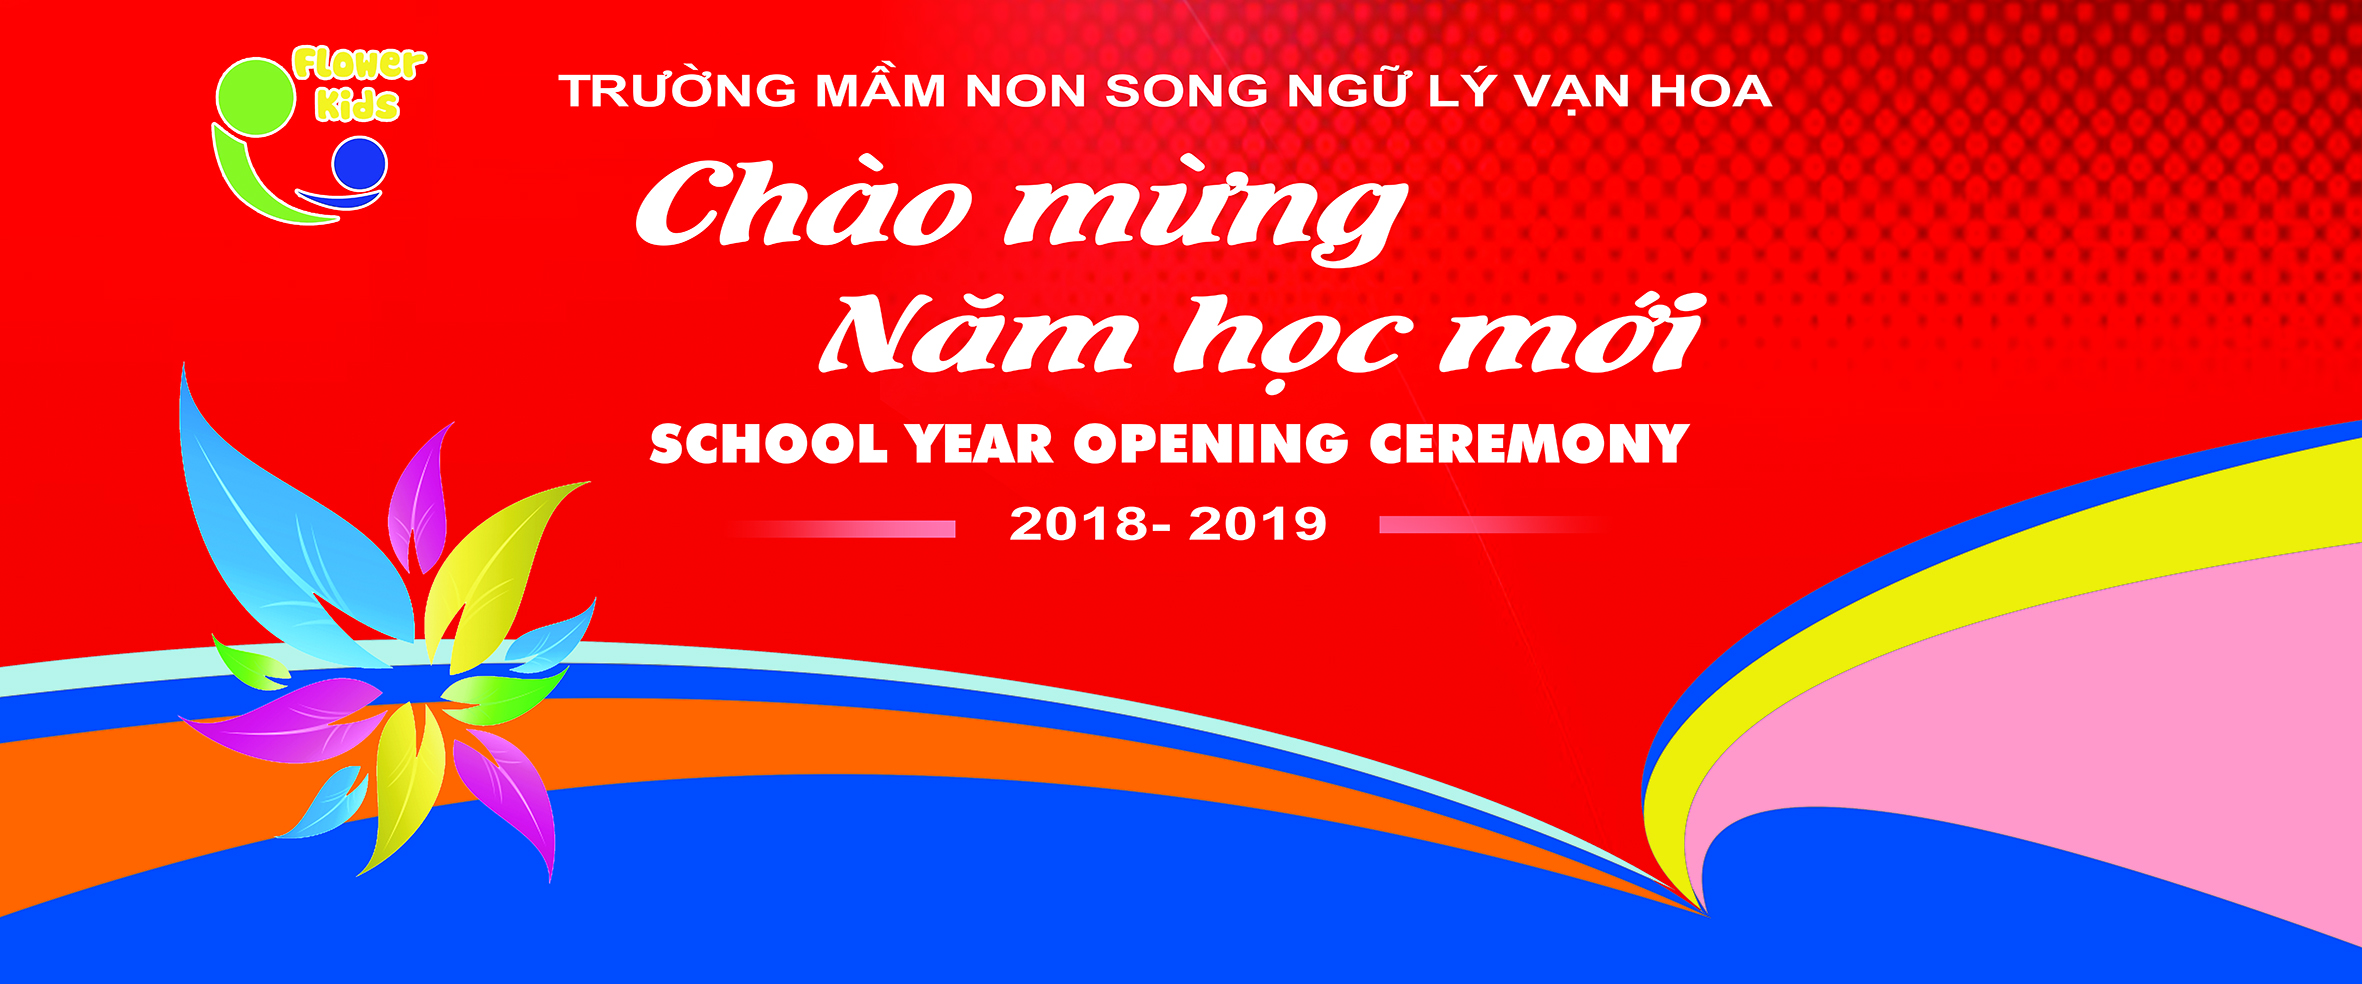 Le Chao Mung nam hoc moi Truong Mam non Song ngu Ly Van Hoa